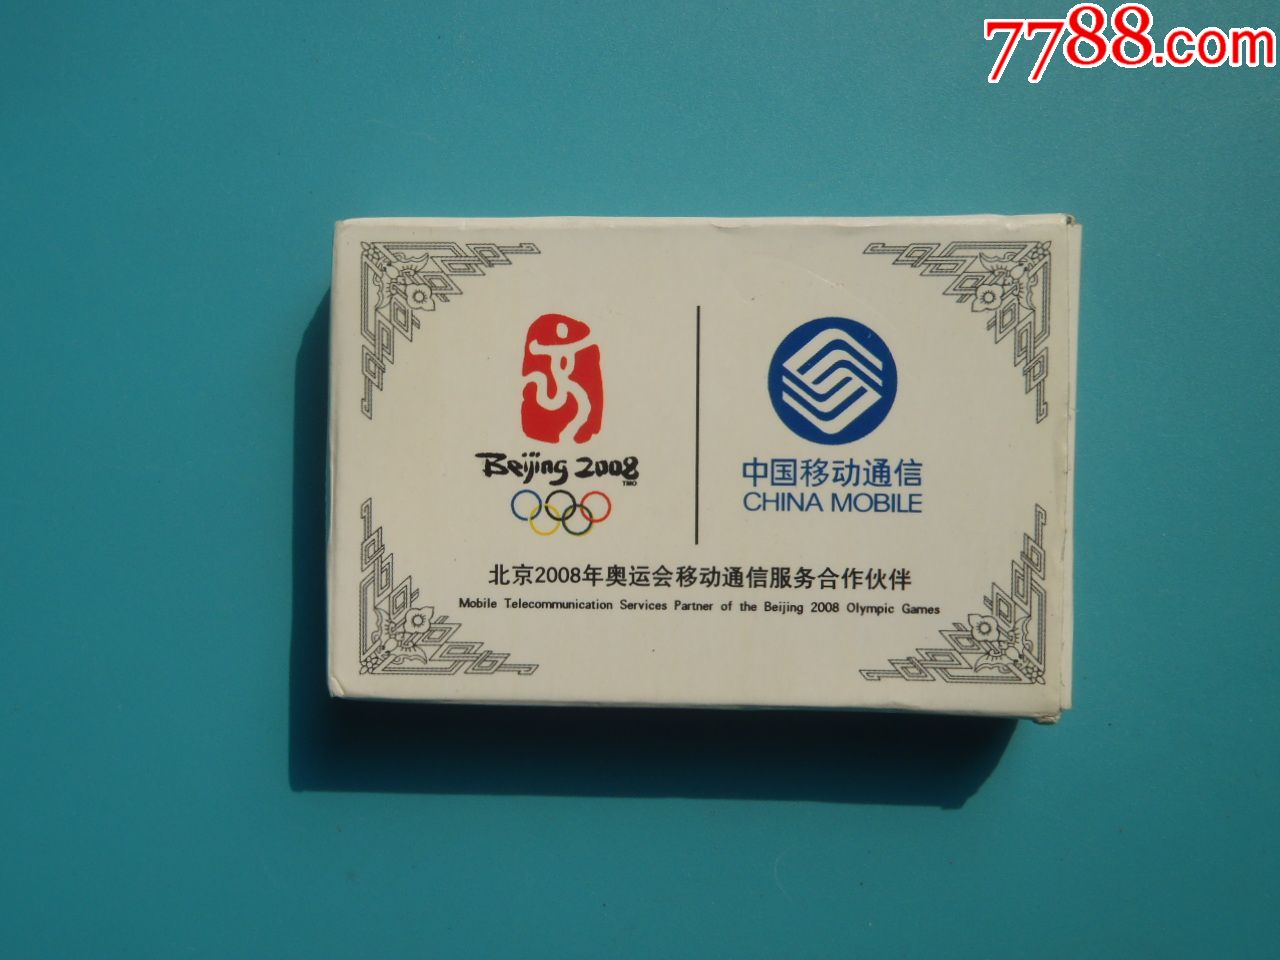 2008年北京奥运会中国移动扑克牌